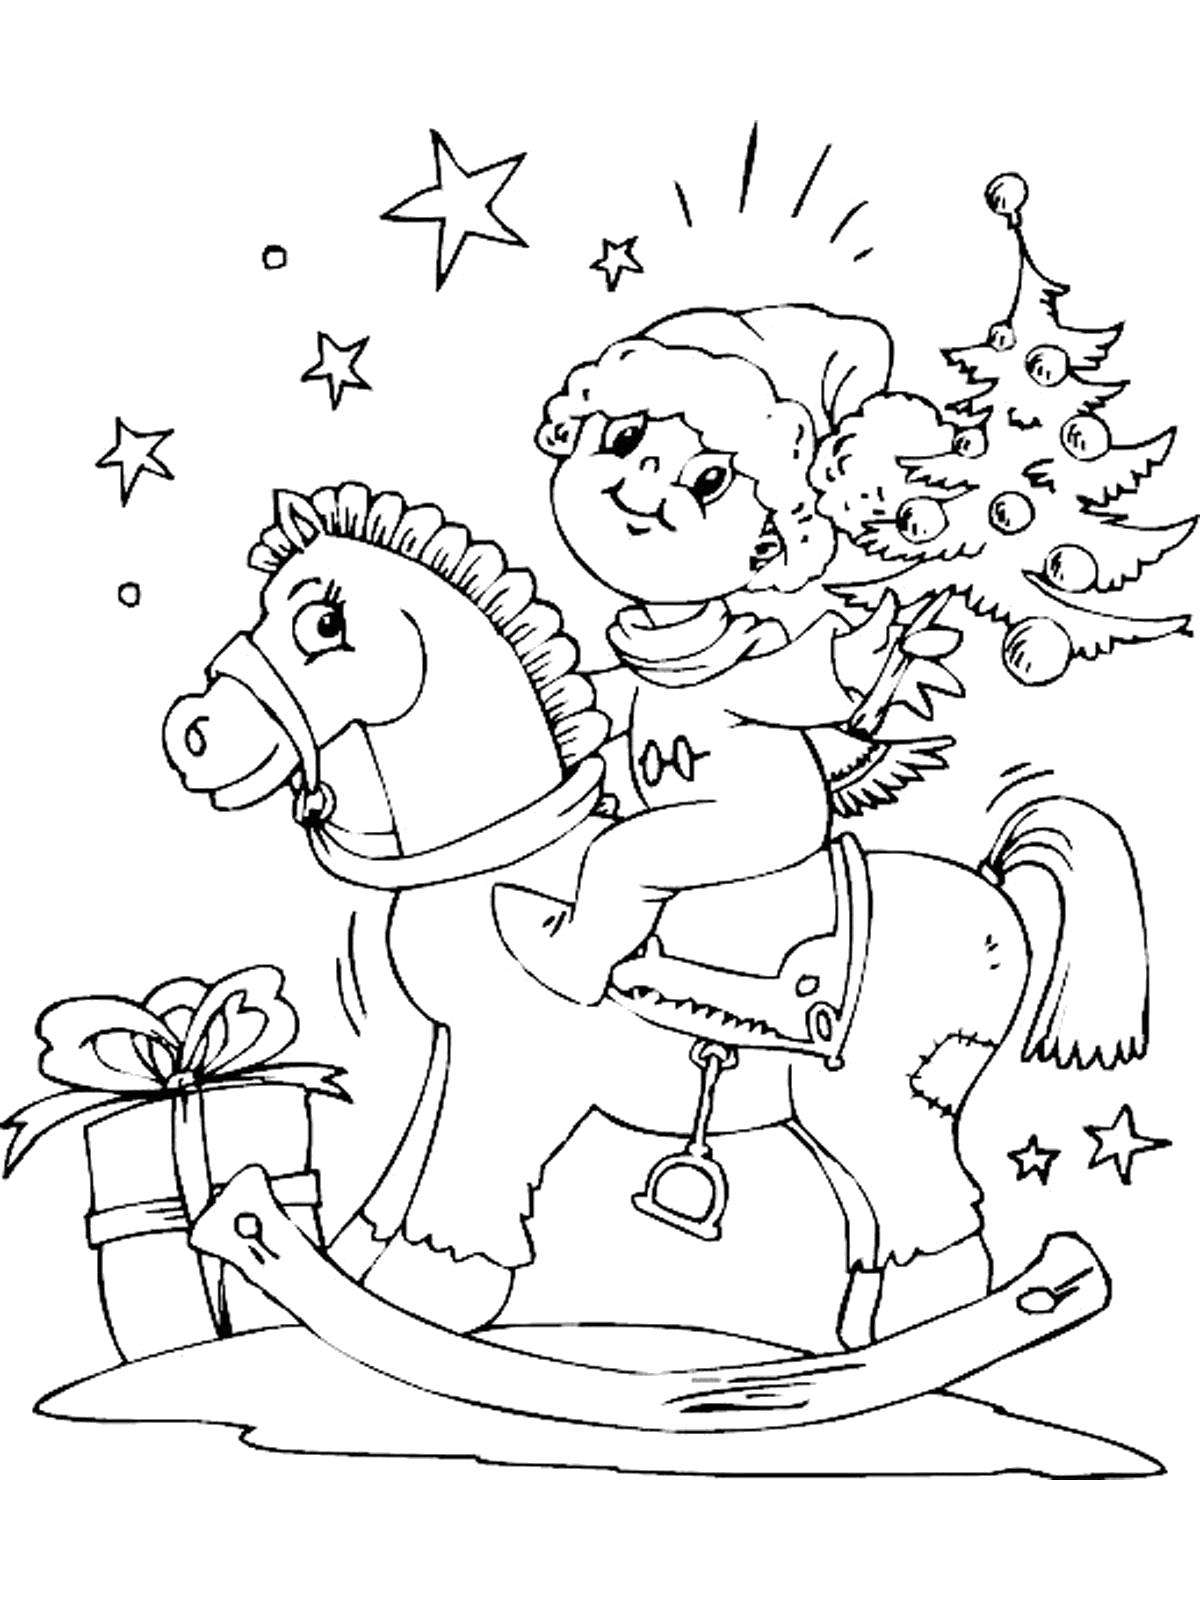 Раскраска Новогодние картинки  год лошади . Скачать новогодние.  Распечатать новогодние